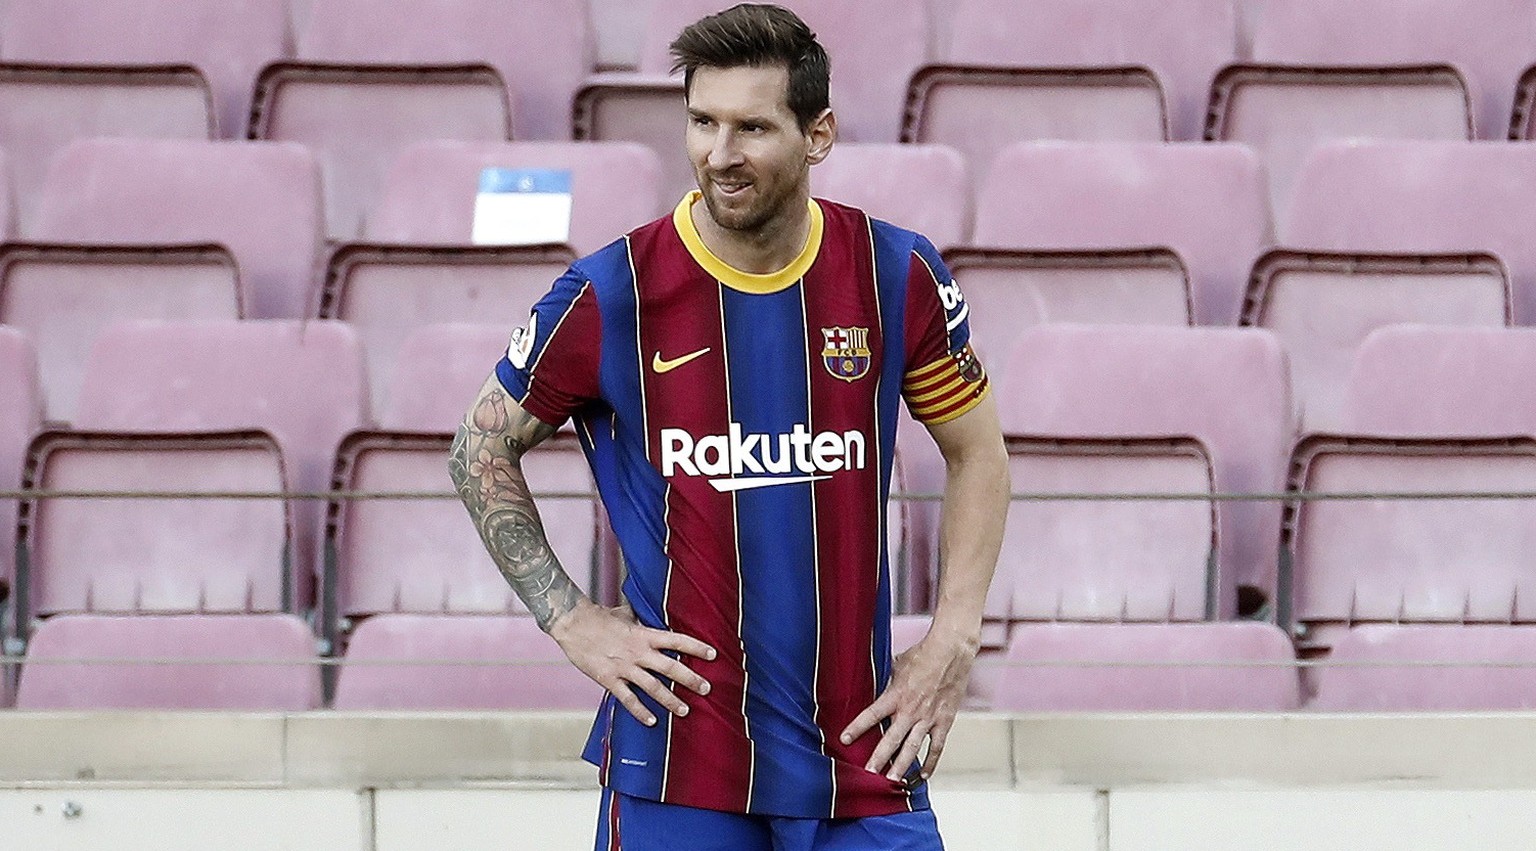 Noch spielt Messi für den FC Barcelona – hier gibt's zumindest beim Namen keine Probleme.